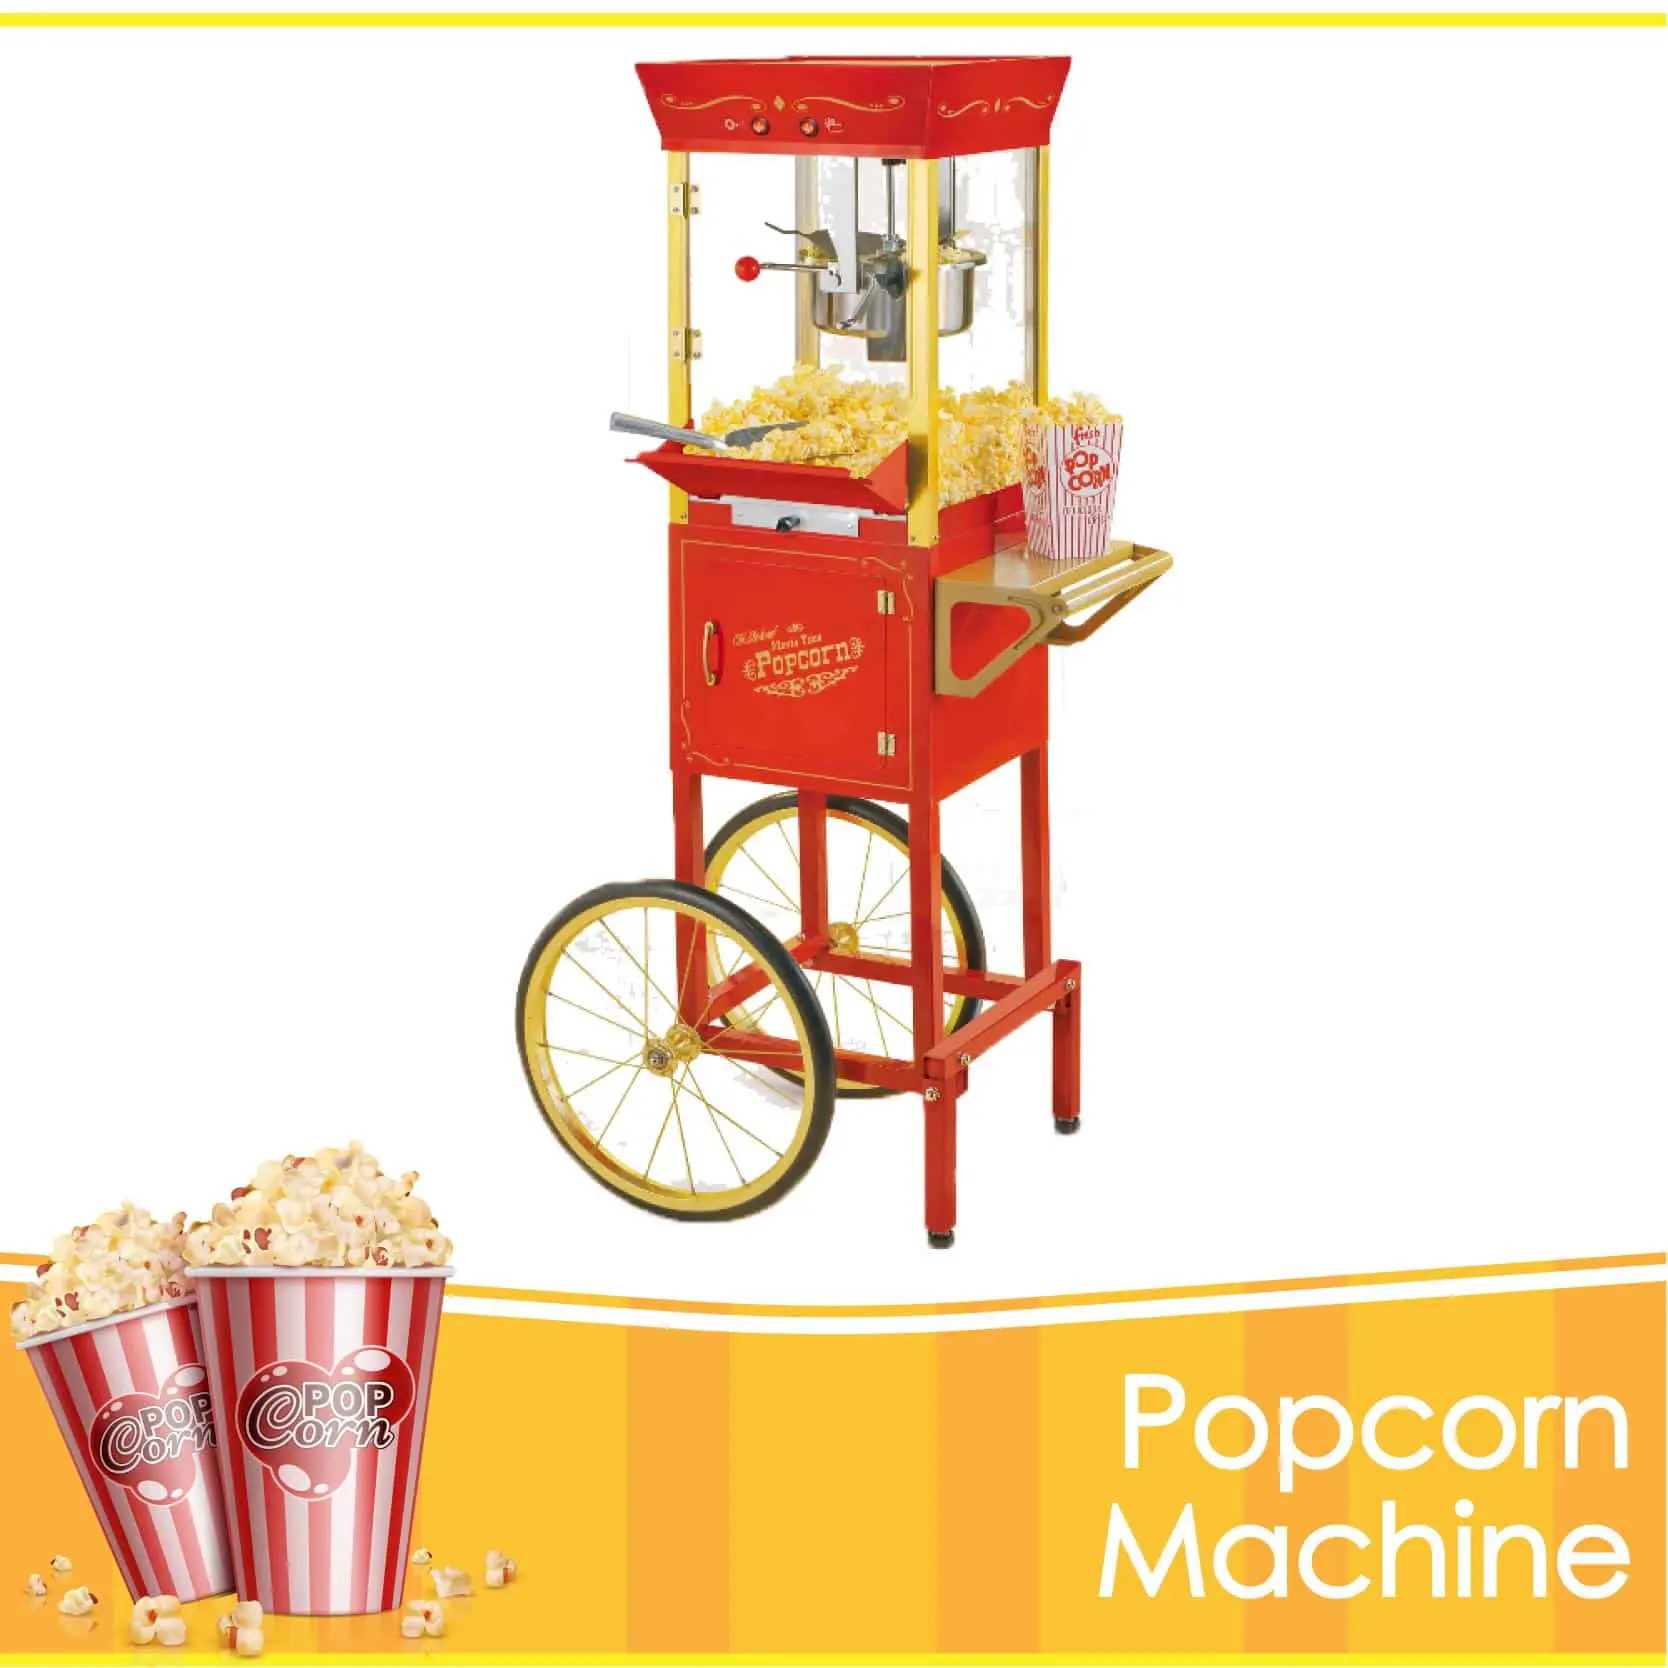 Popcorn Machine Rental in NY